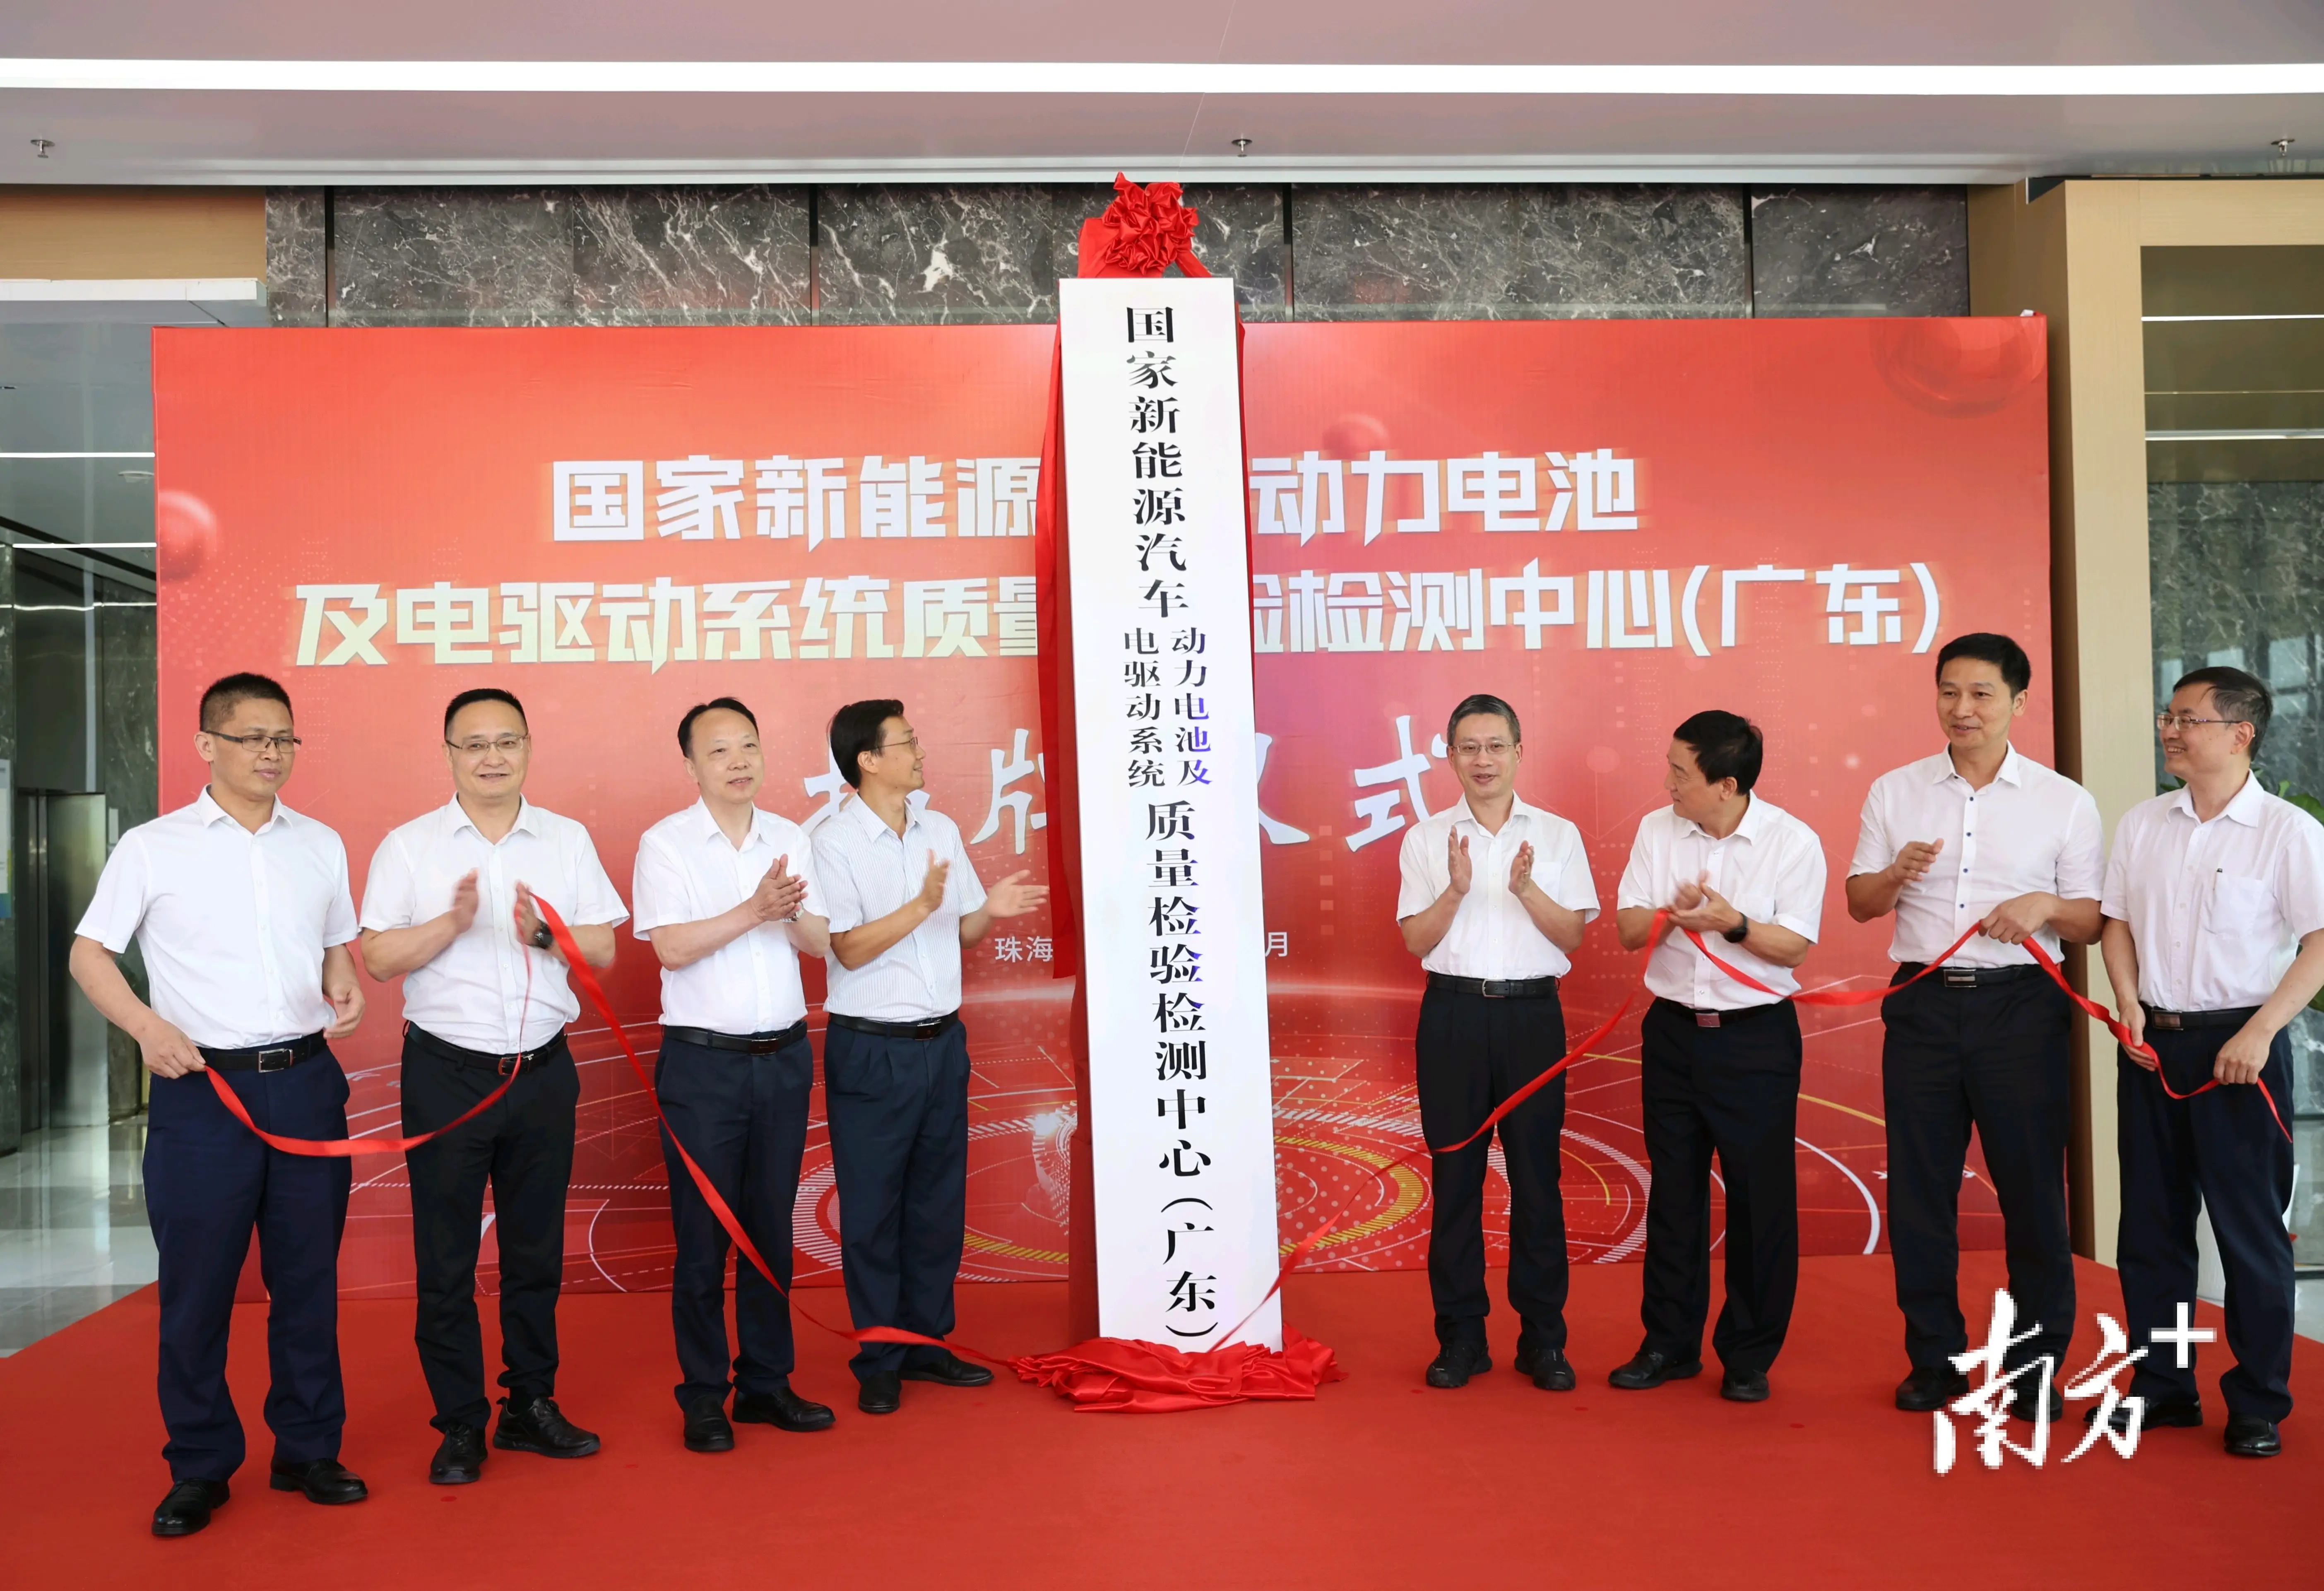 上海 DDR 电机供应商：技术创新与团队协作的力量  第8张